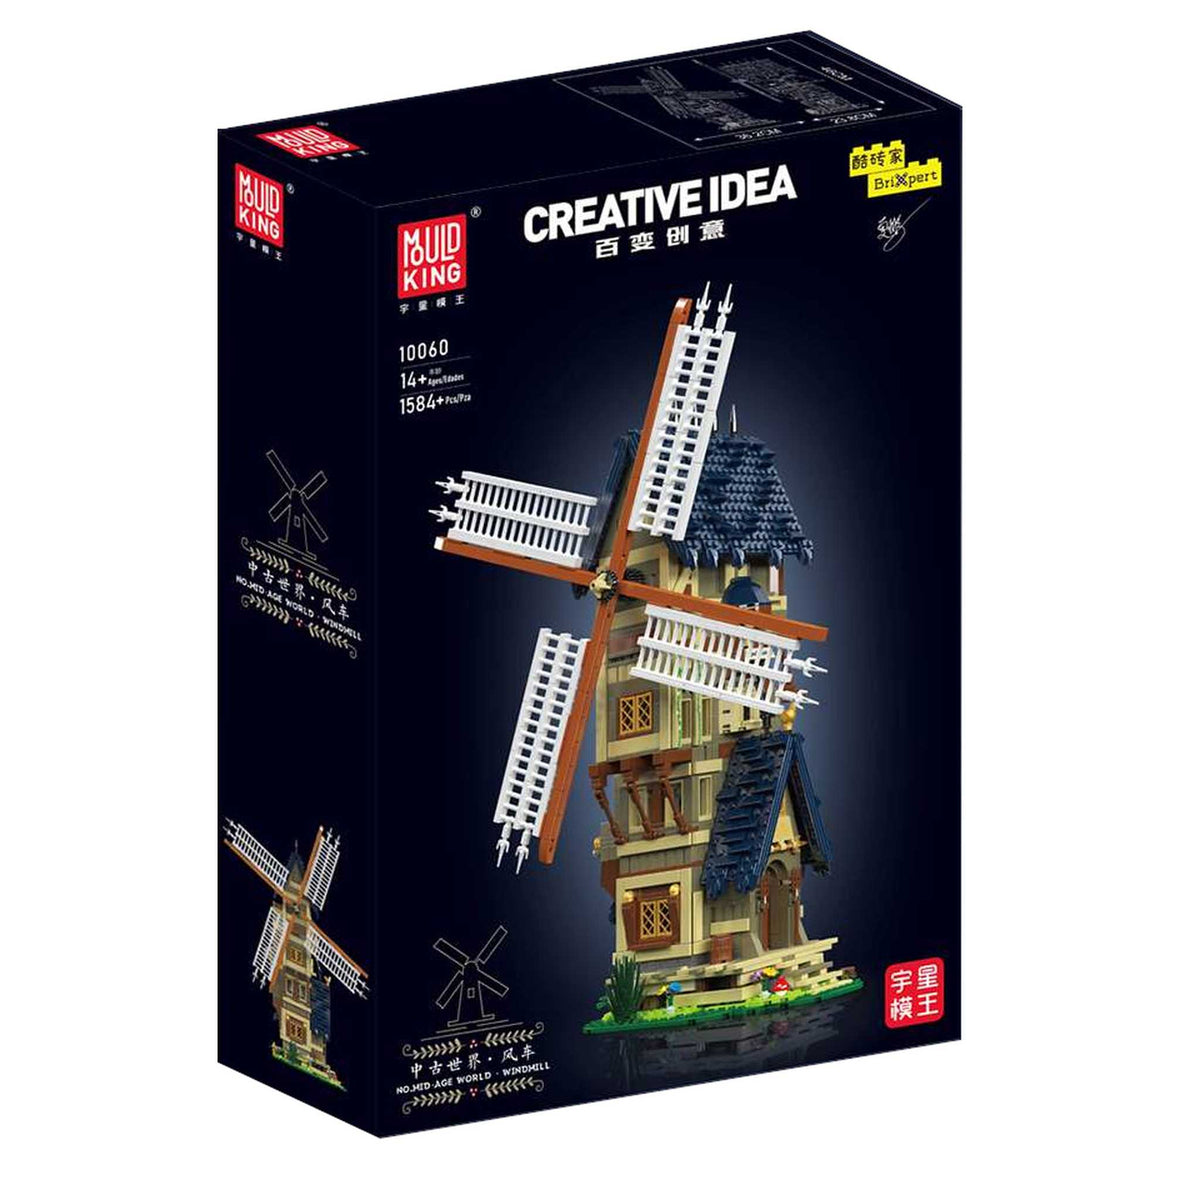 10060 - Mittelalterliche Windmühle (Mould King)